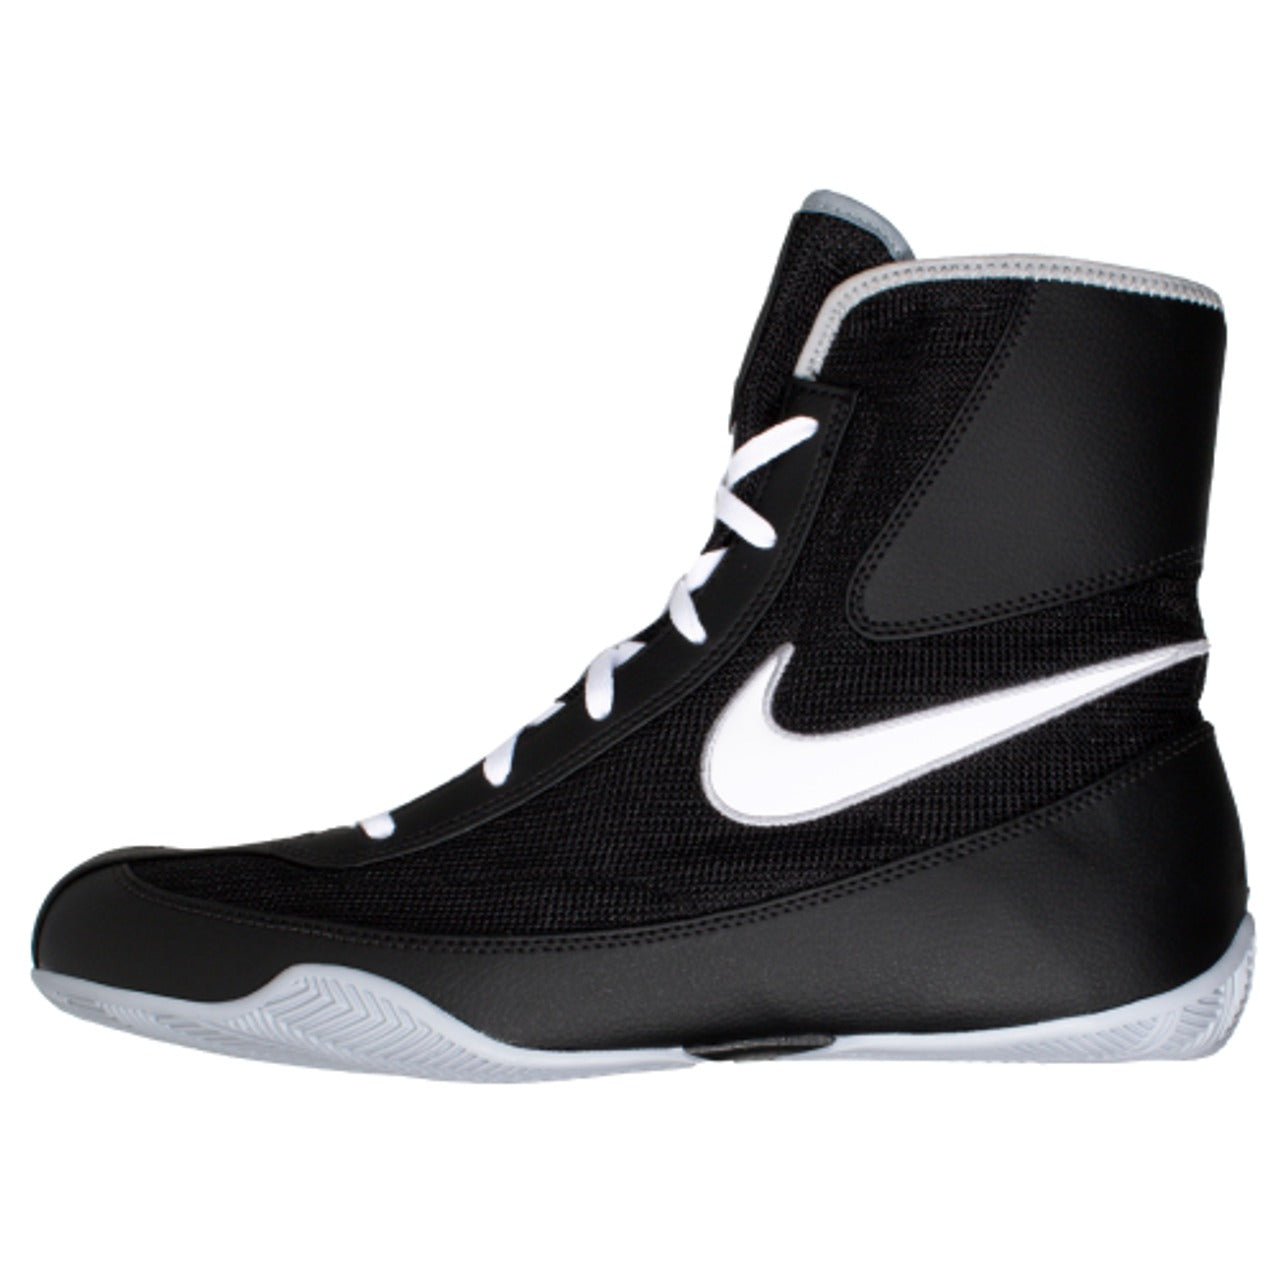 Chaussures De Boxe Semi-Montantes Nike Machomai 2 - Noir/Blanc/Gris